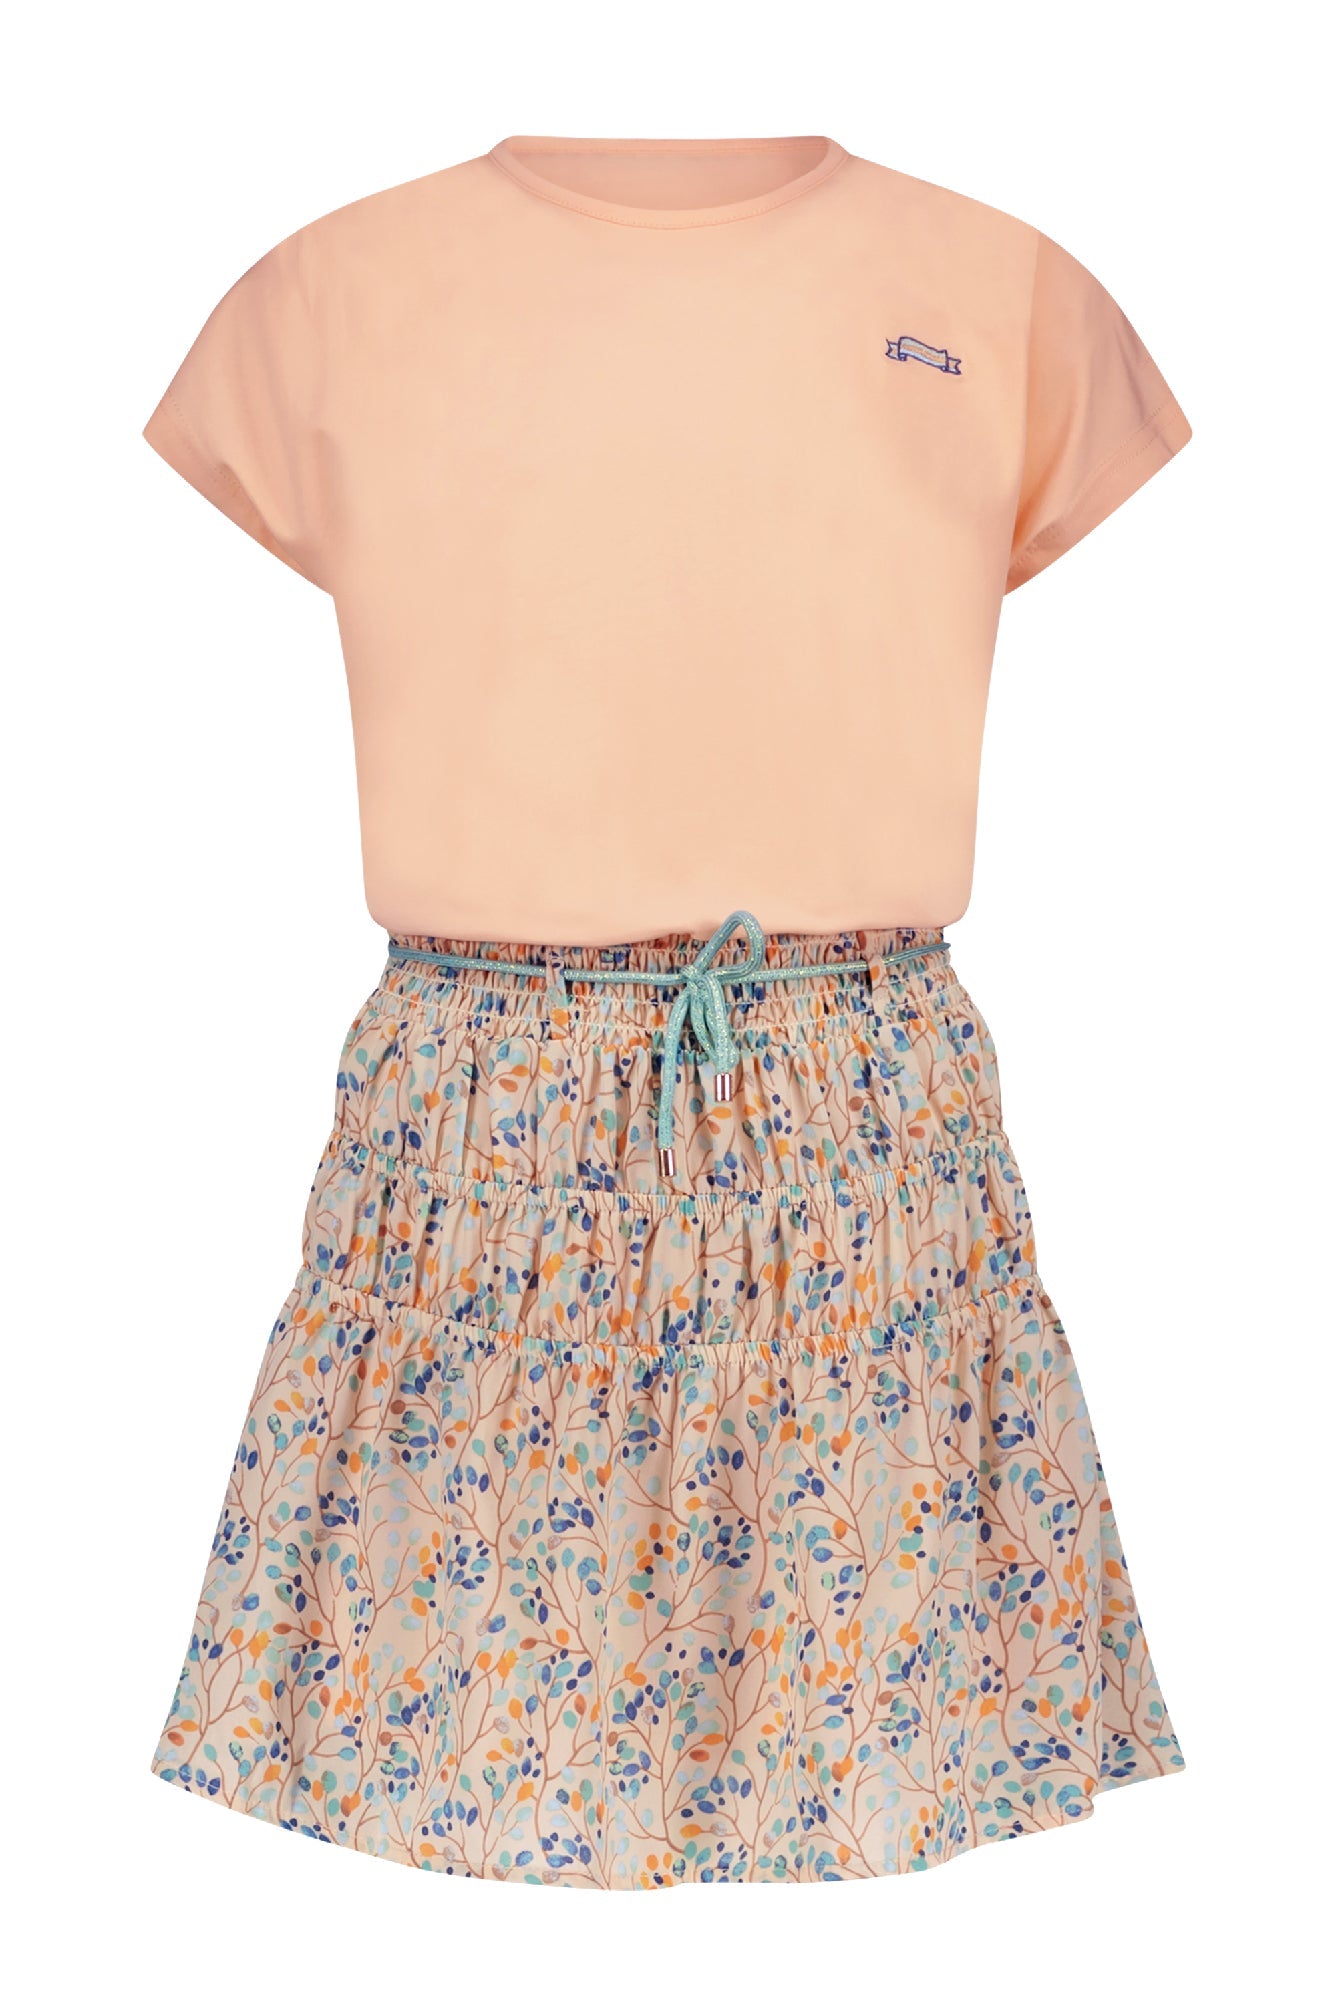 Meisjes Manyu combi dress jersey s/sl top+woven skirt van NoNo in de kleur Rosy Sand in maat 134-140.